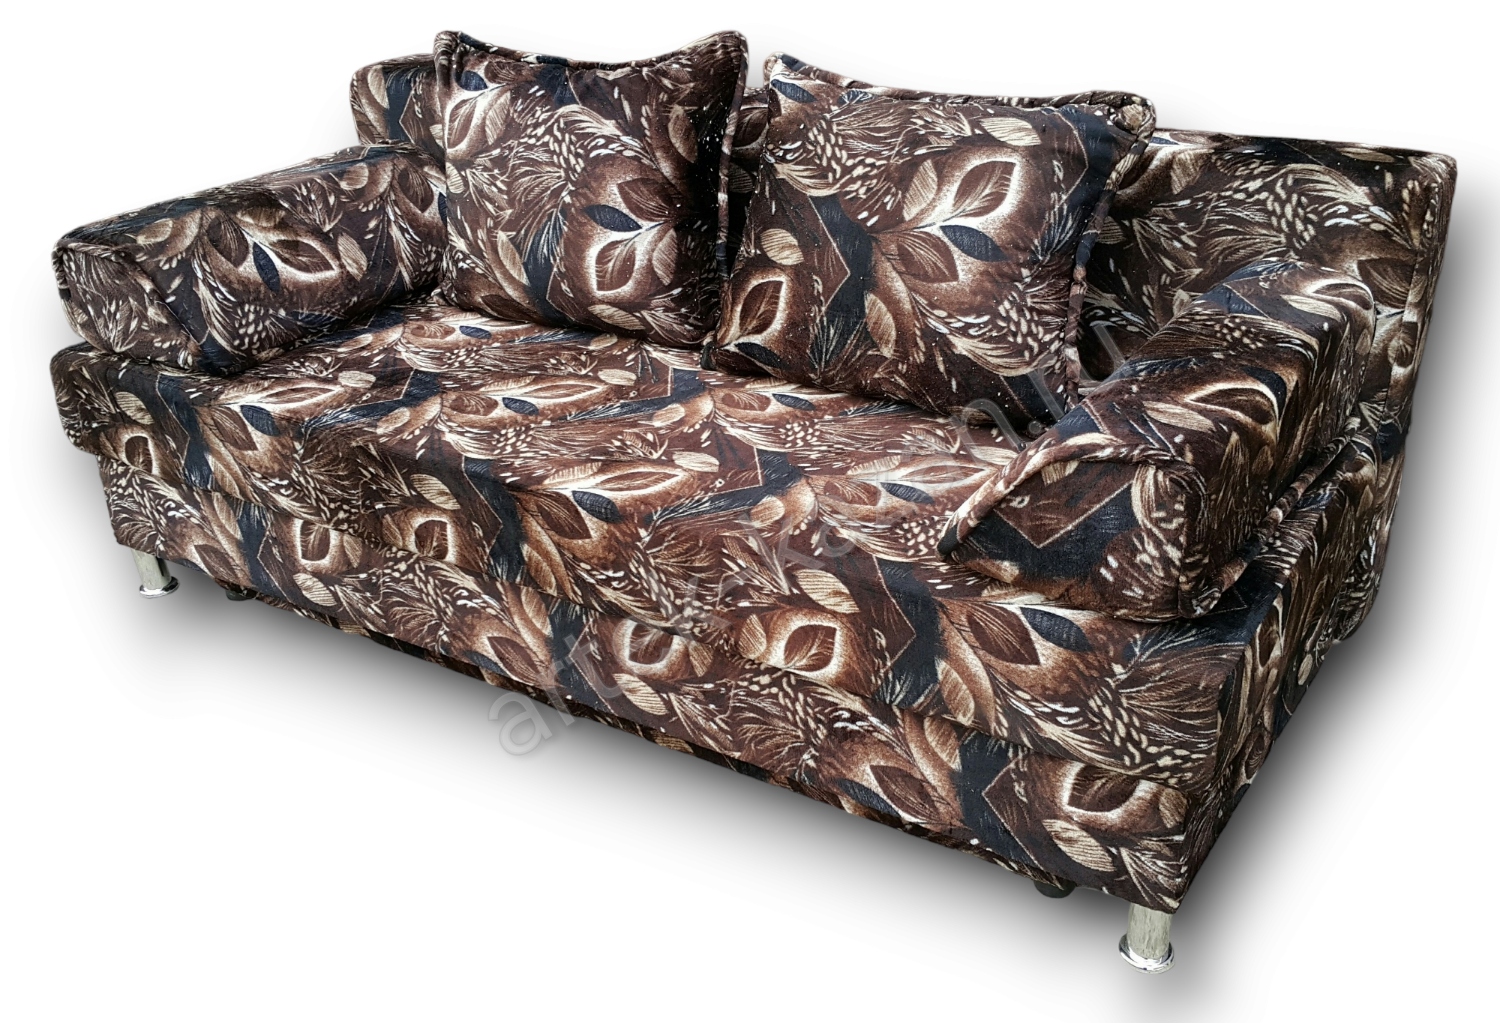 диван еврокнижка Эконом фото № 72. Купить недорогой диван по низкой цене от производителя можно у нас.